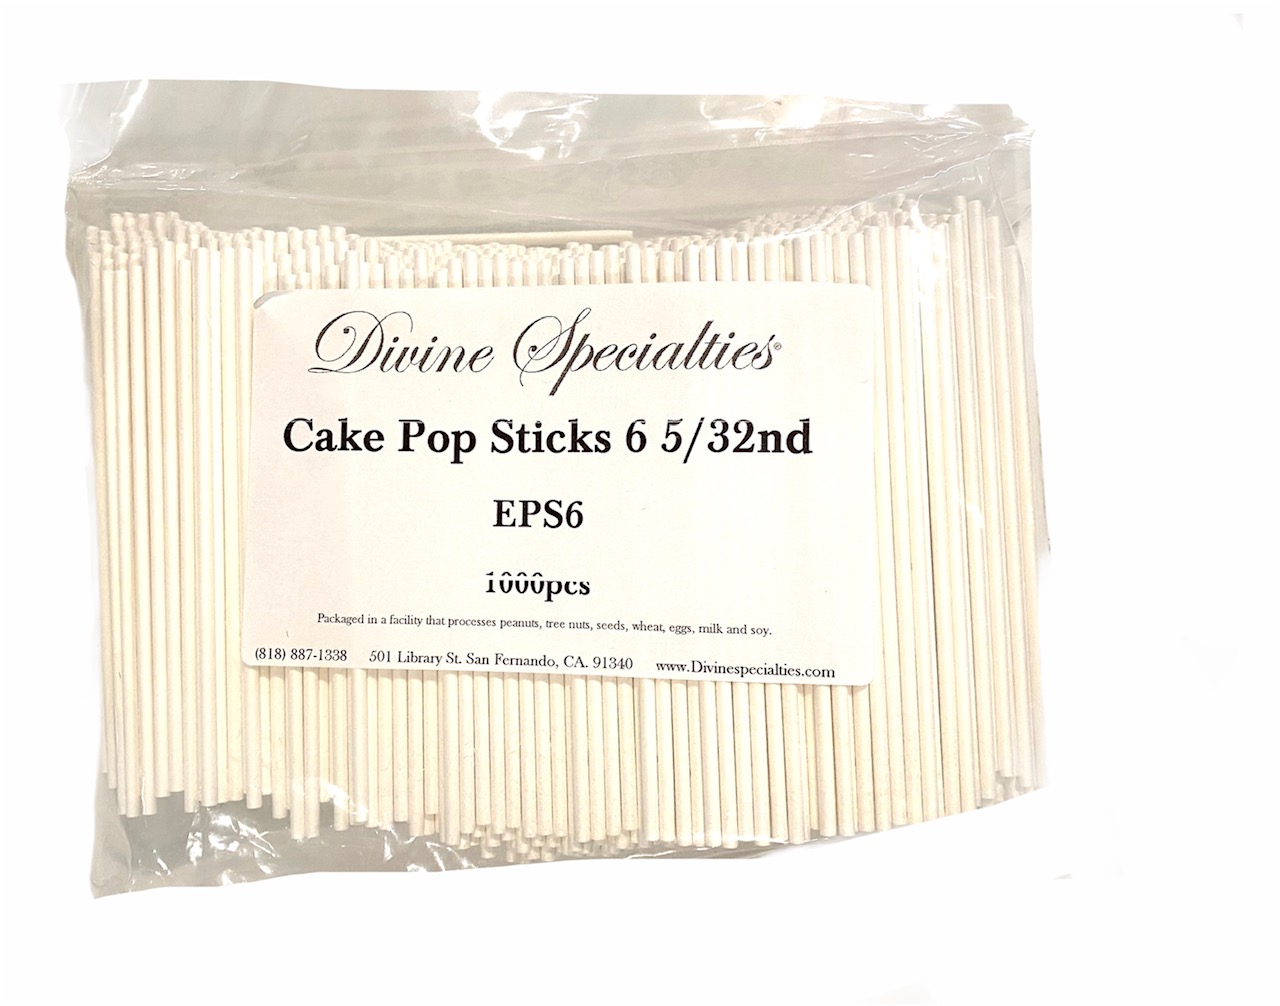 Cake Pop Sticks 6x5/32nd - 1000 pieces - Divine Specialties